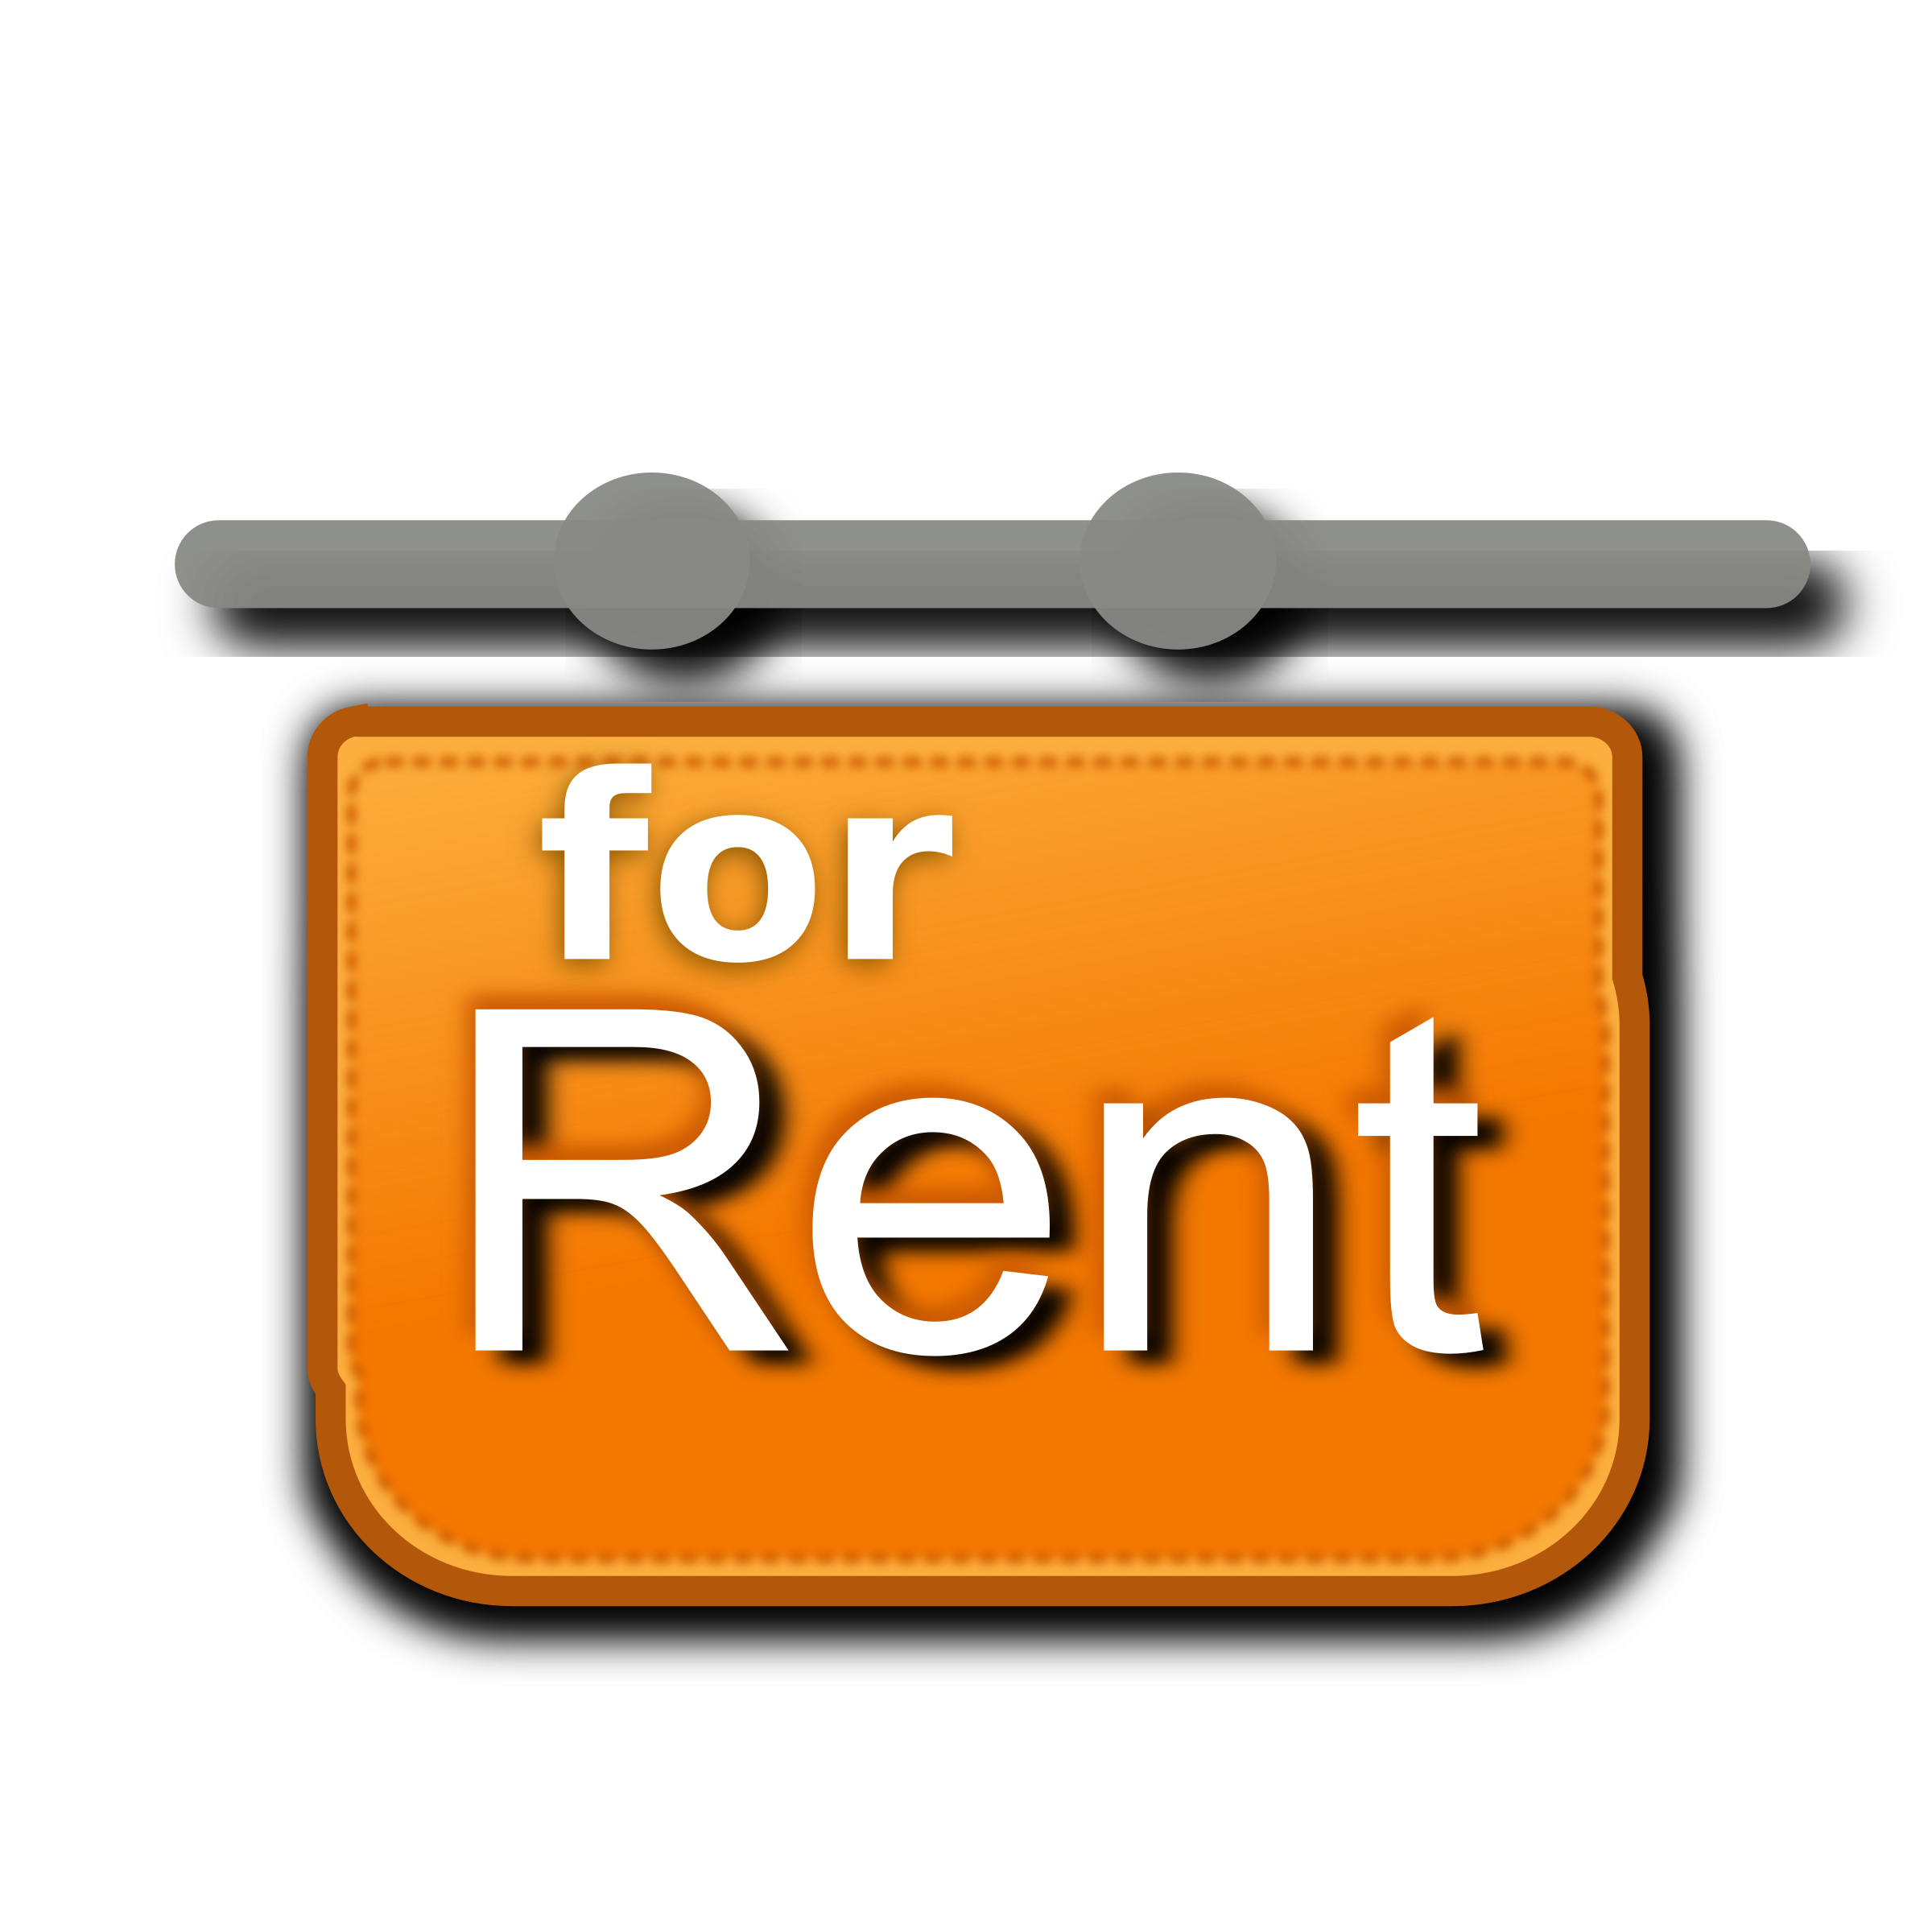 Download Rent Transparent Image HQ PNG Image FreePNGImg.